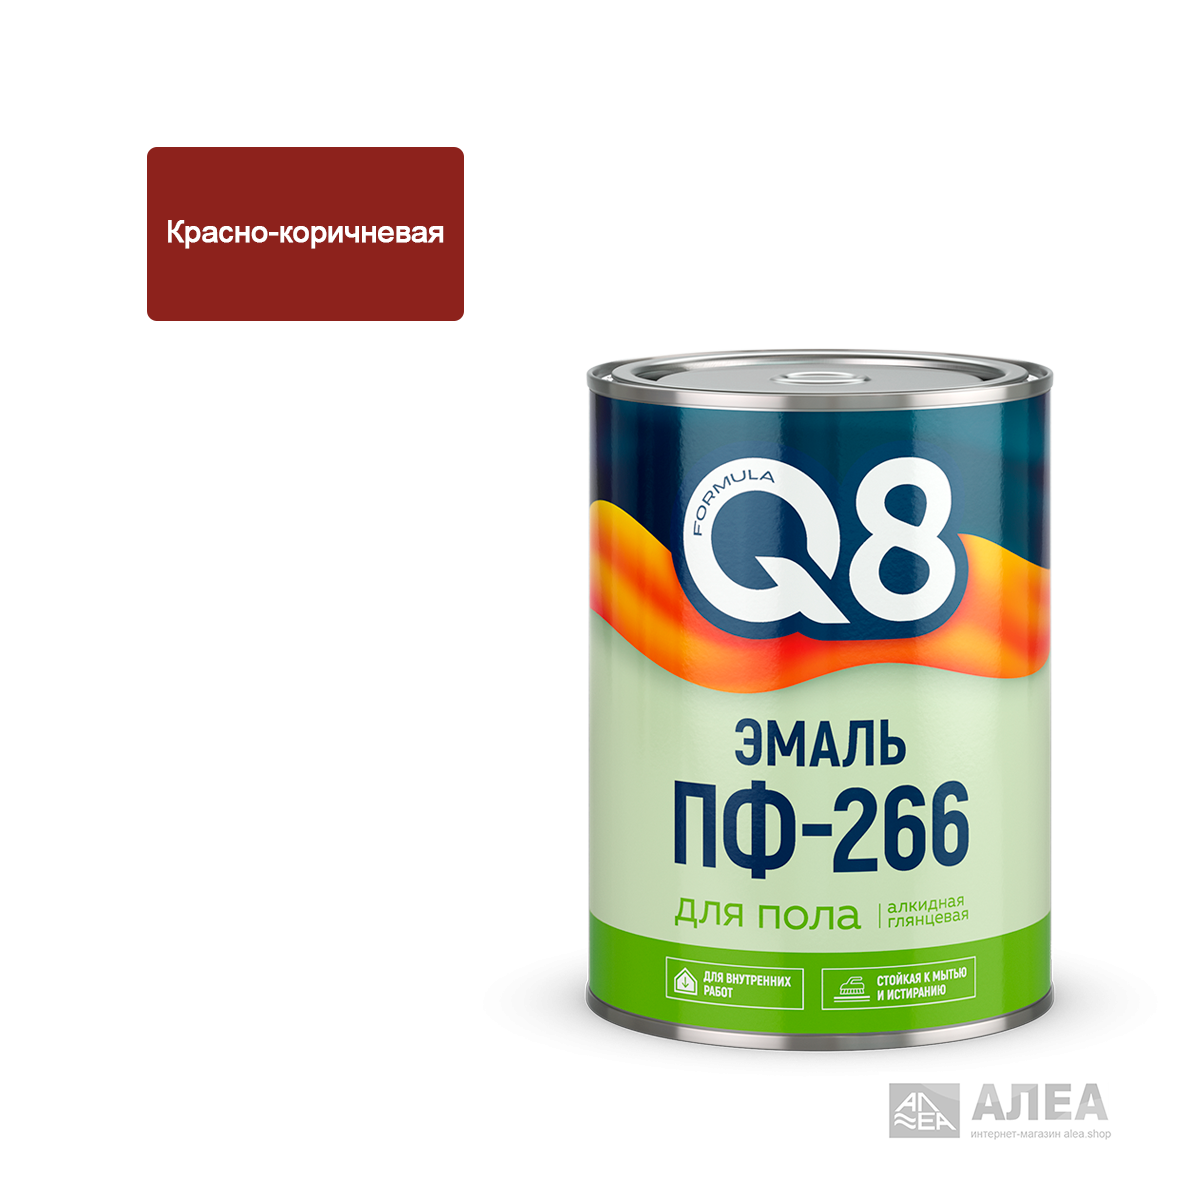 Эмаль FORMULA Q8 ПФ-266 для пола красно-коричневая 0,9кг